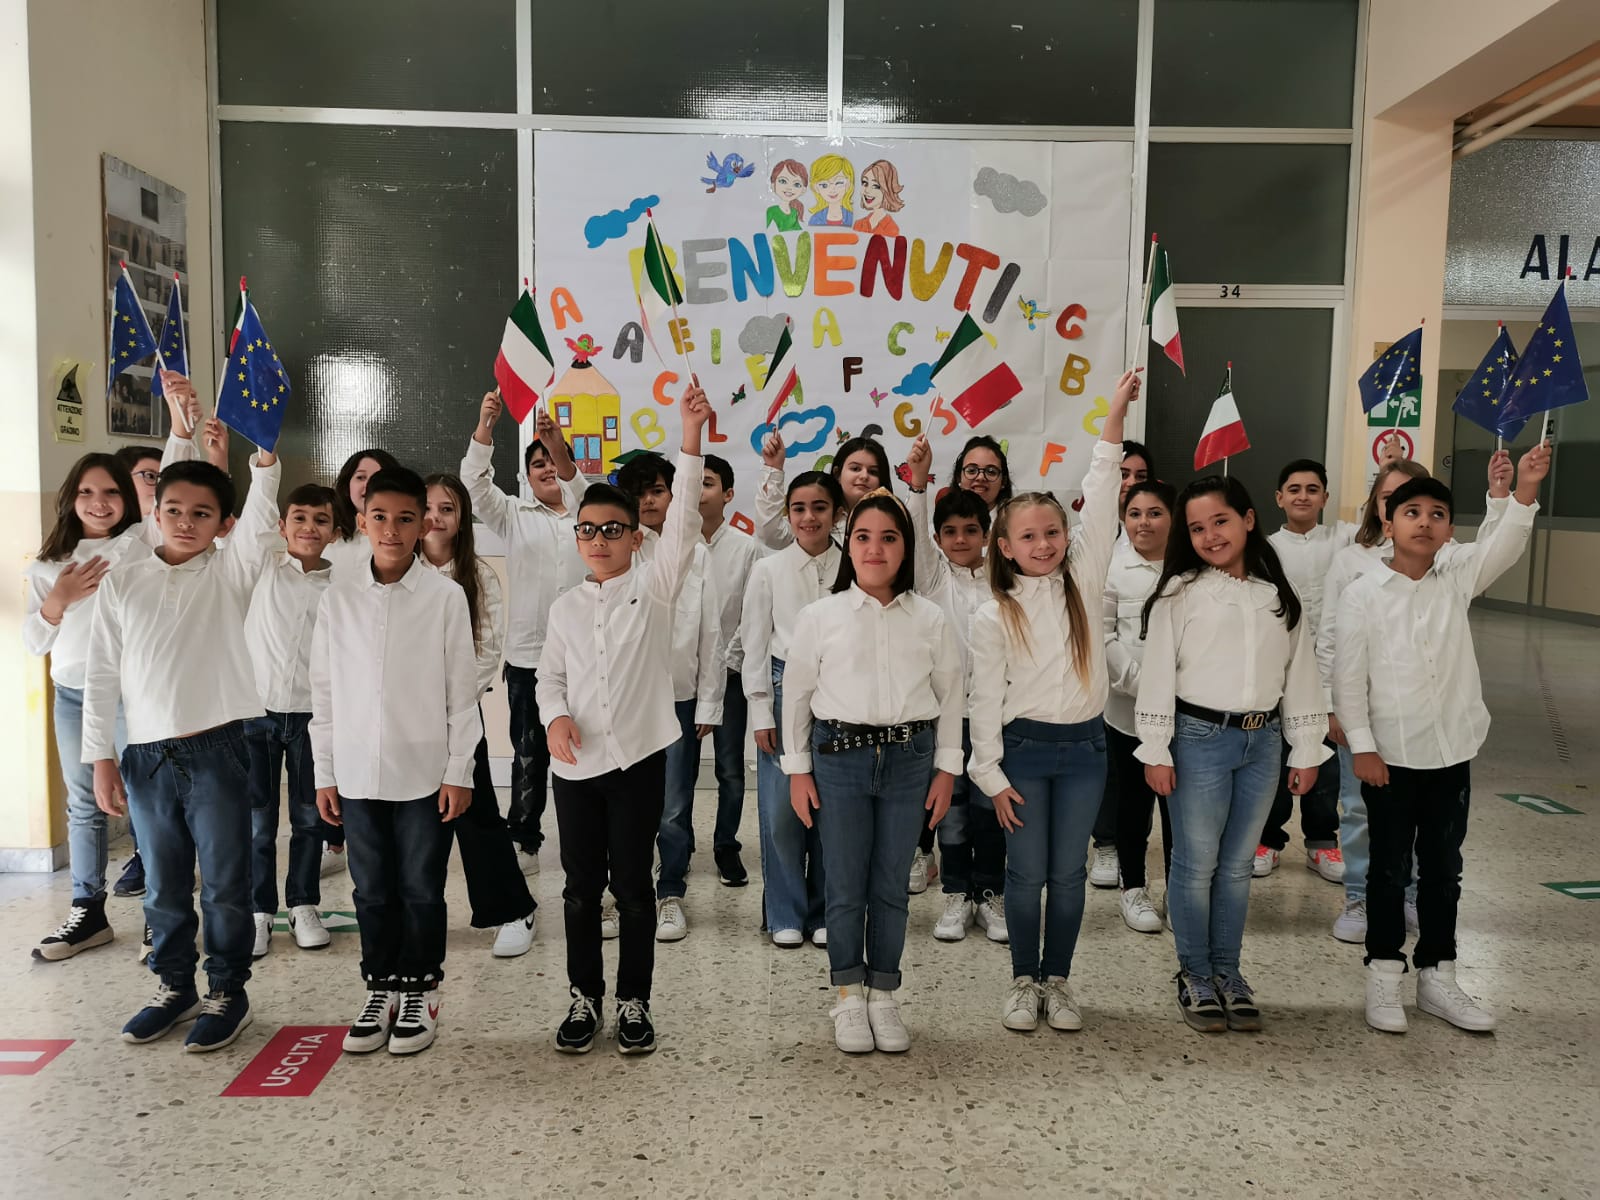 Caltanissetta. Il benvenuto del Coro della scuola primaria “Caponnetto” ad insegnanti e alunni stranieri dell’Erasmus